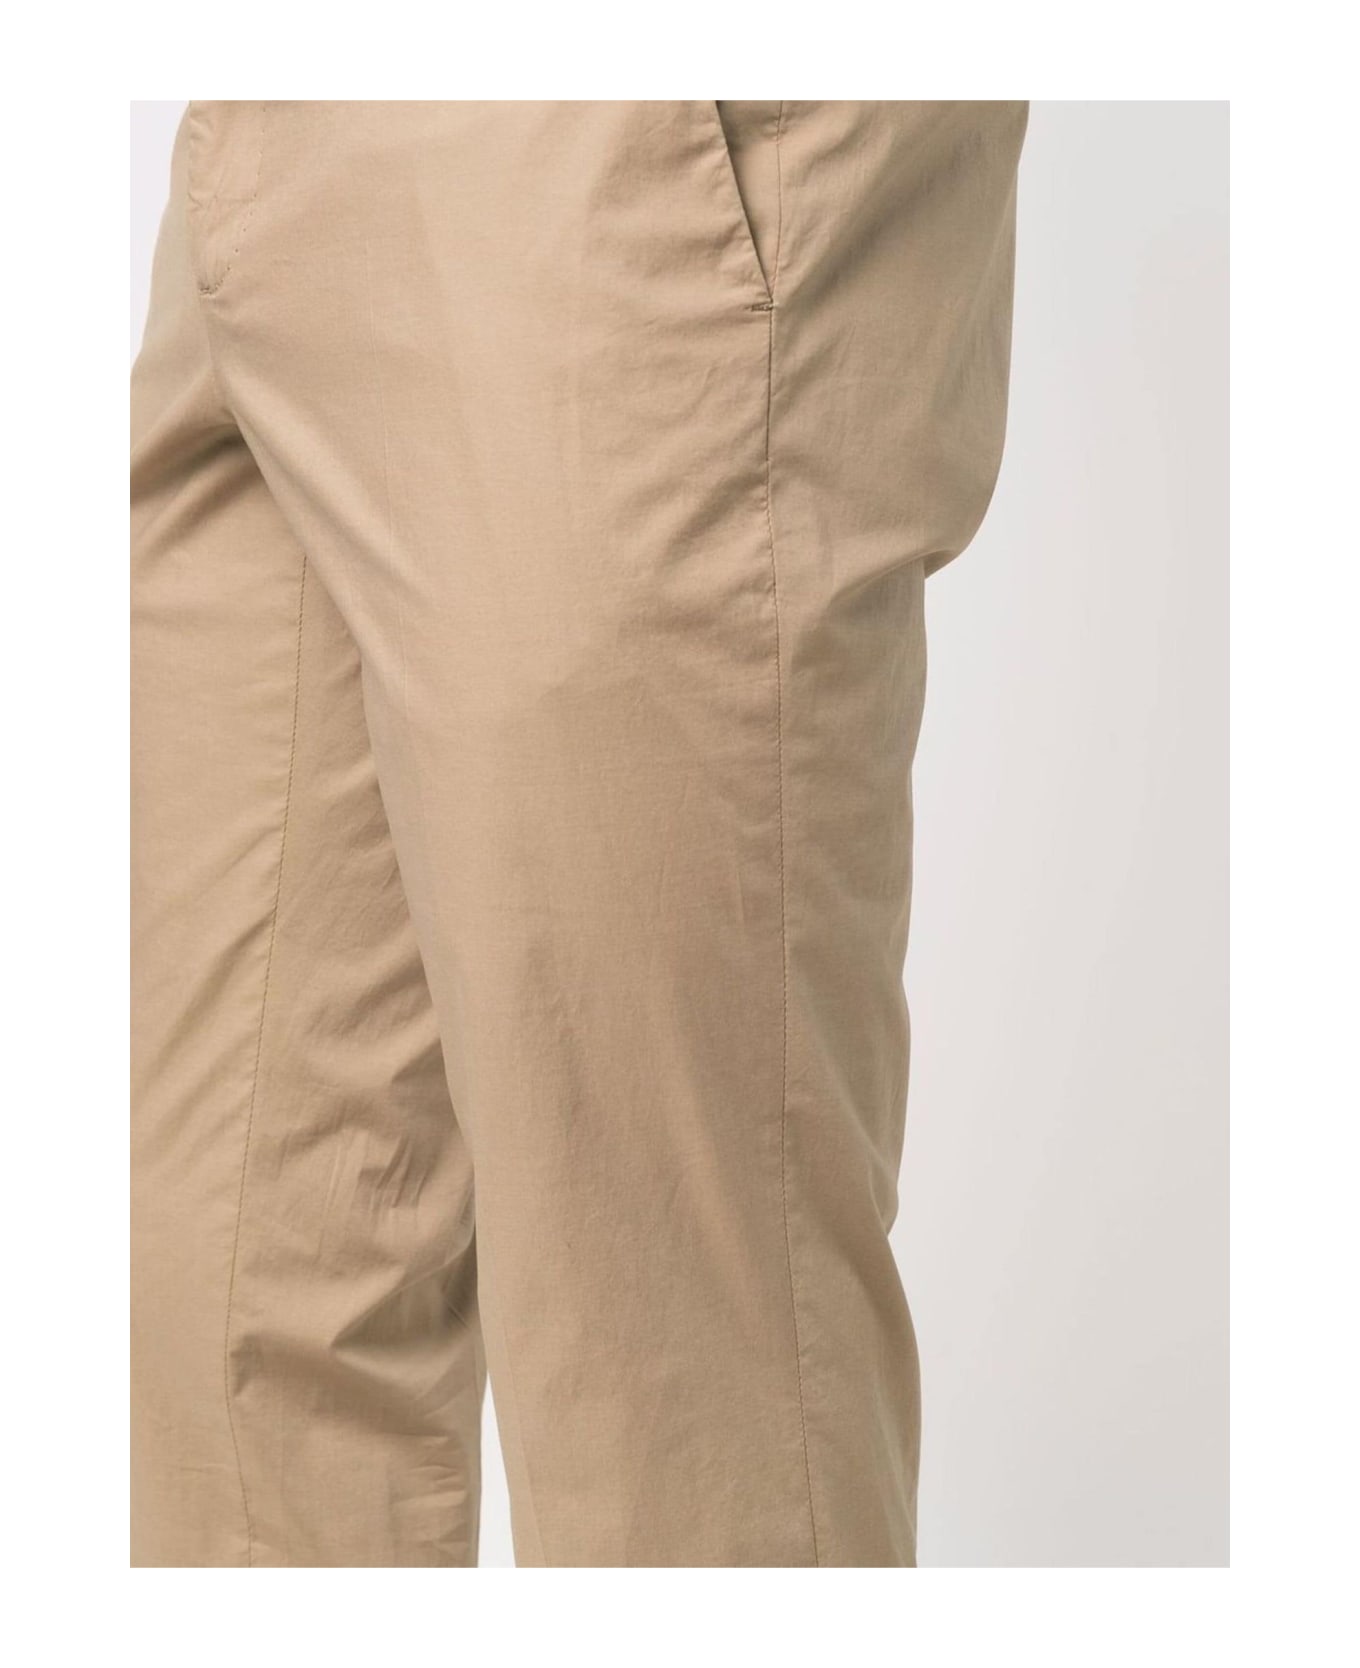 Incotex Dark Beige Cotton Trousers - Beige